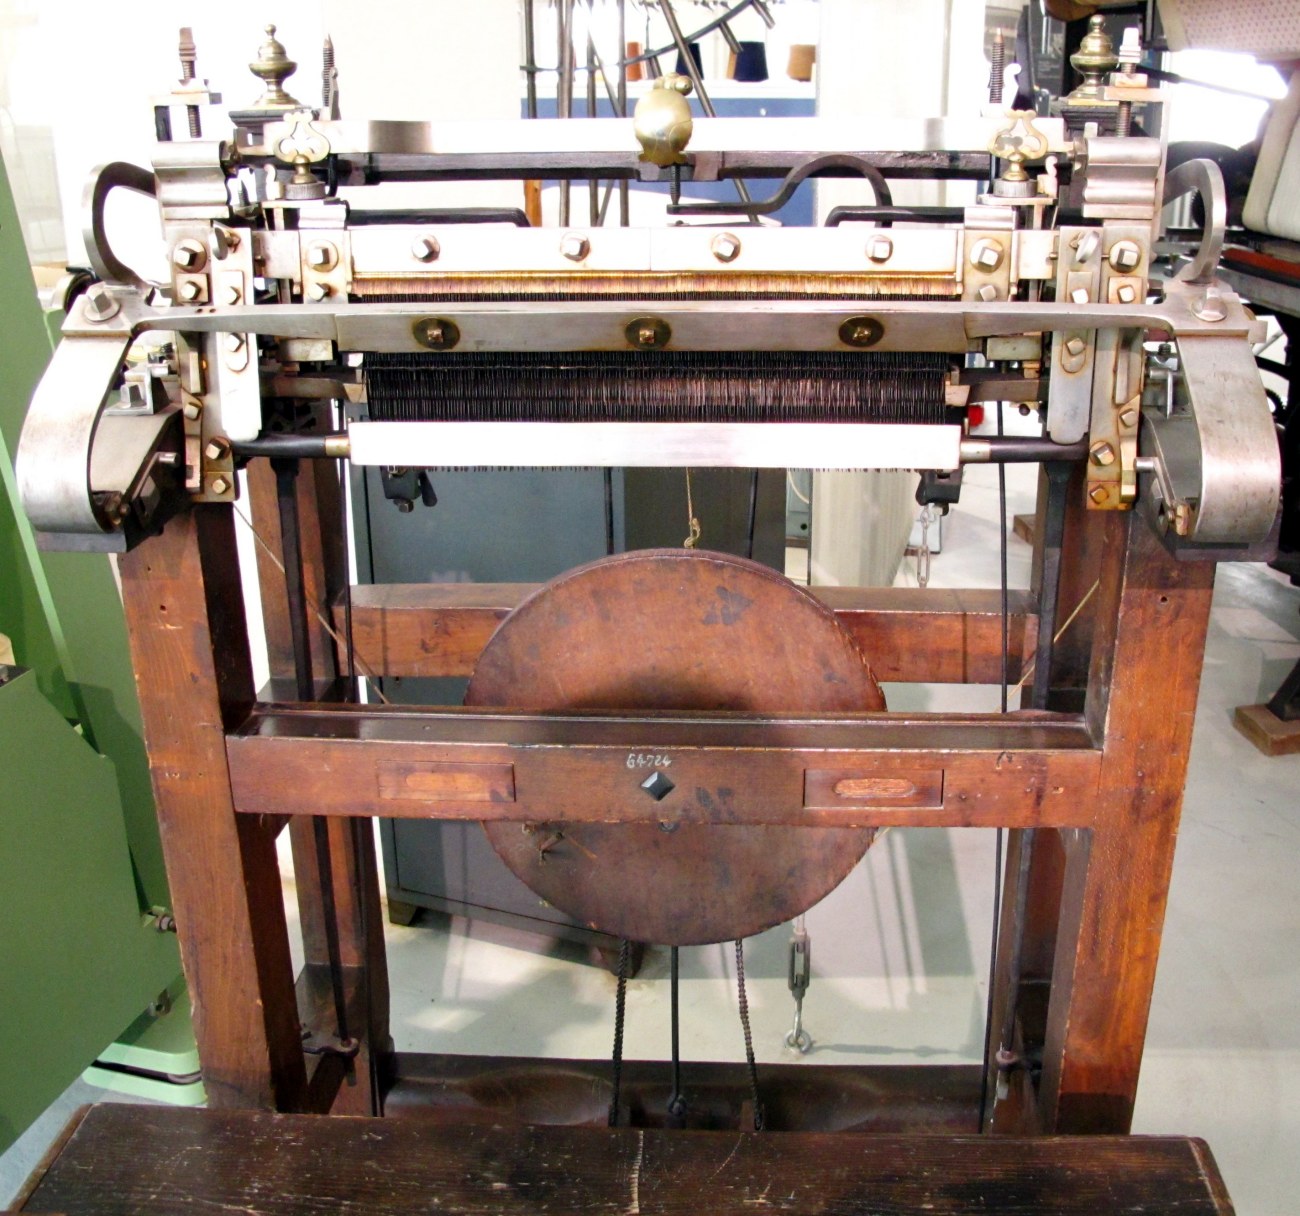 19th century knitting machine